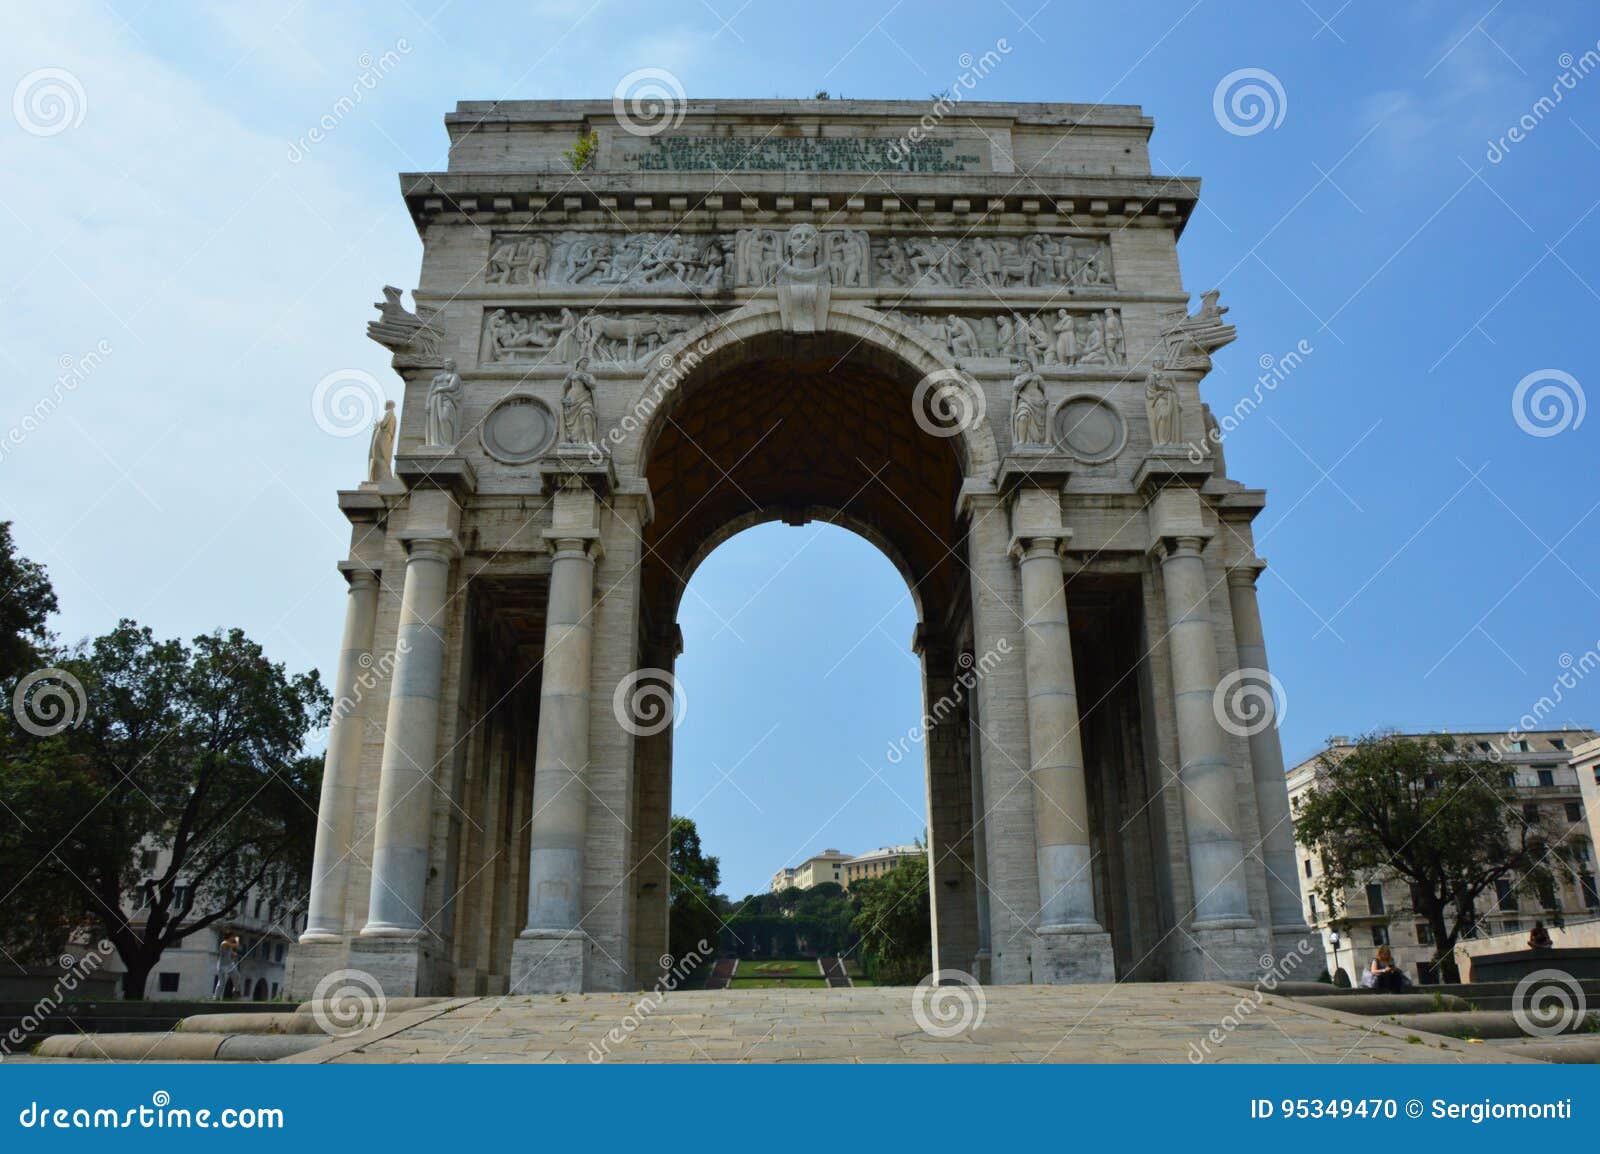 piazza della vittoria - victory square in genoa with the arc of triumph, liguria, italy